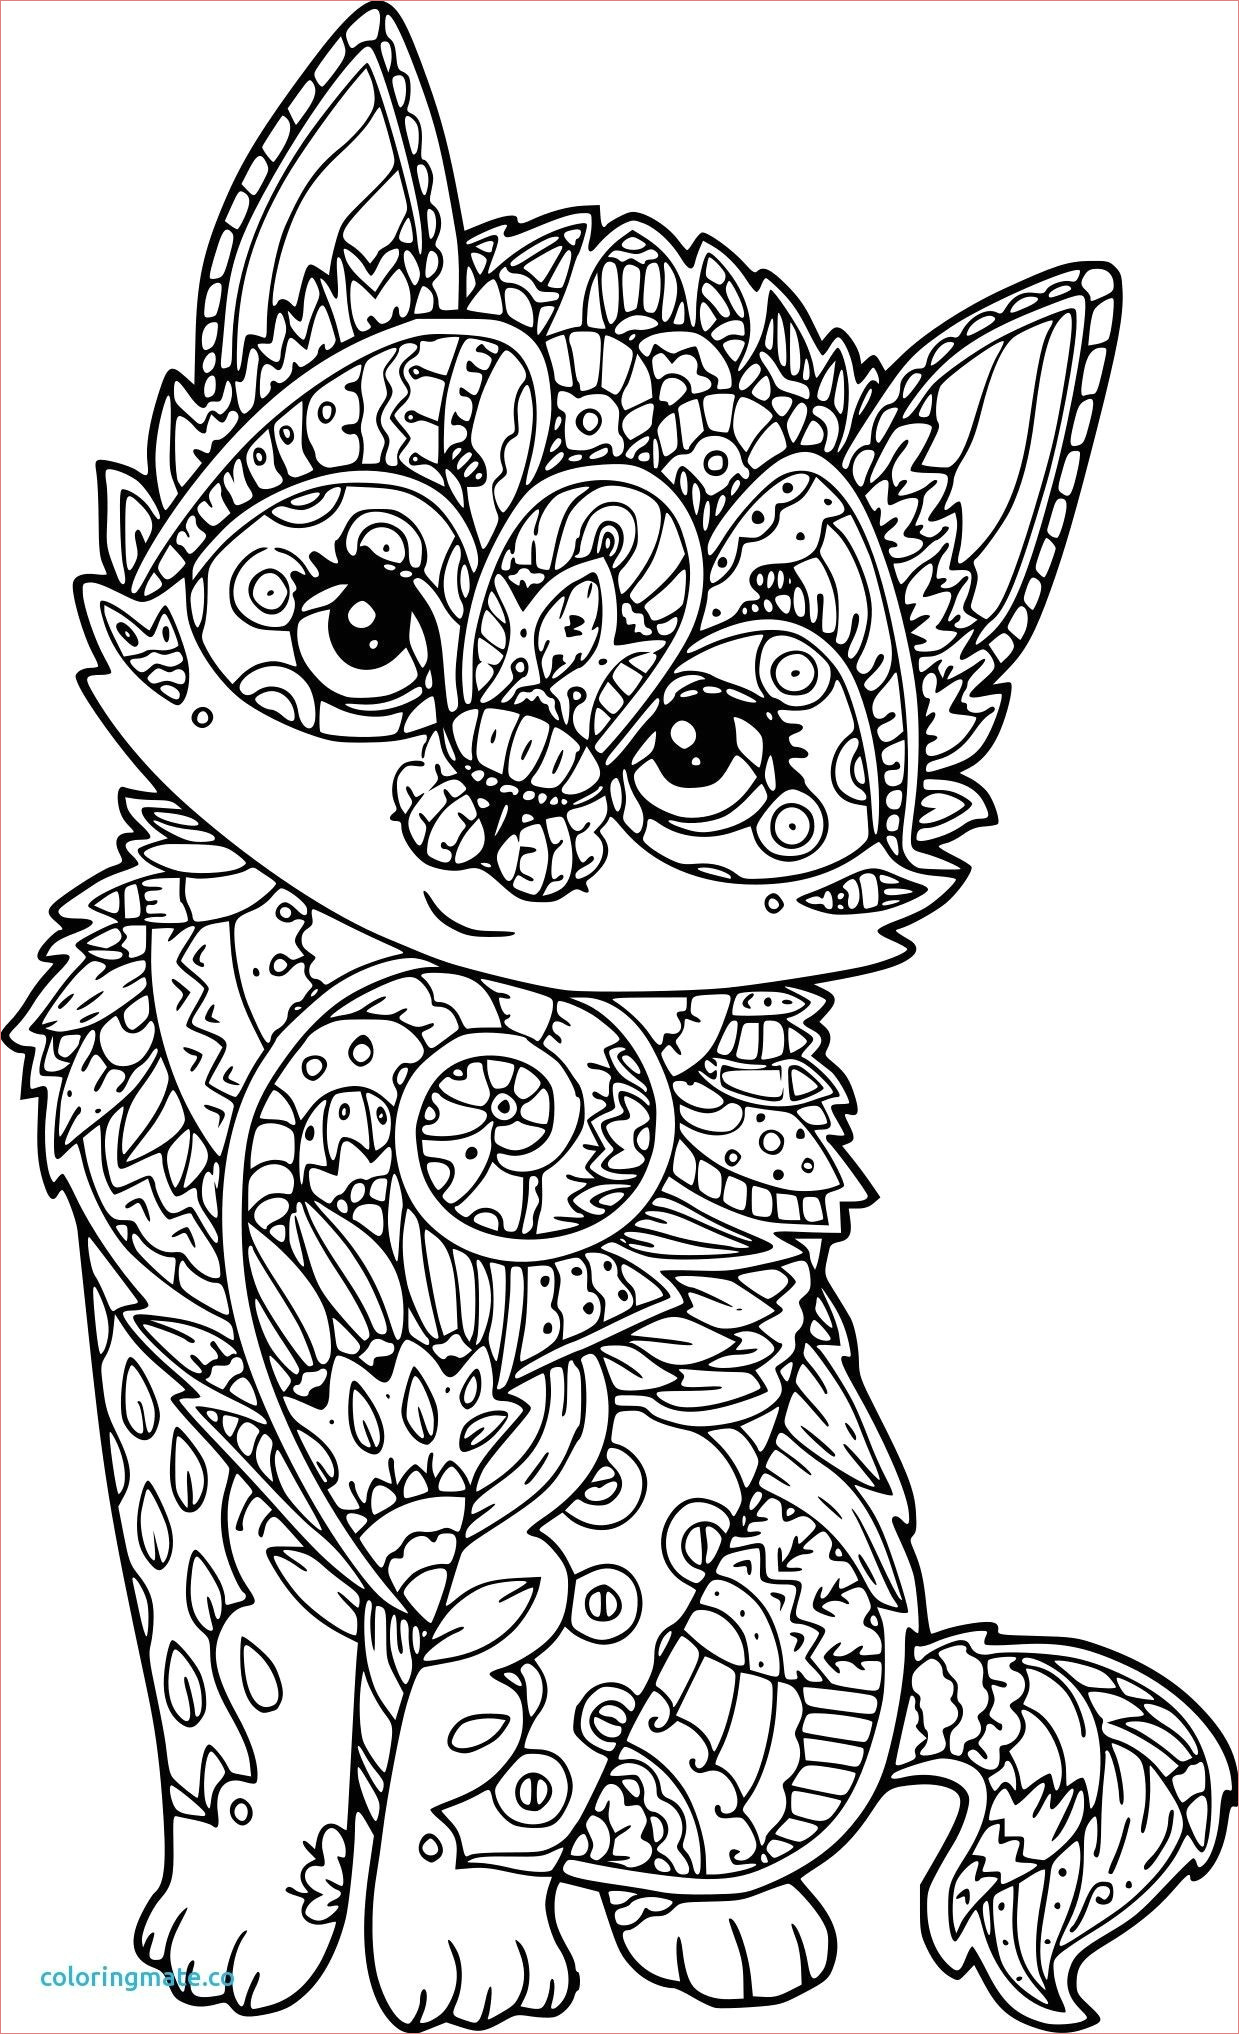 coloriage dur de chat niedlich coloriage mandala chat papillon zeitgenossisch